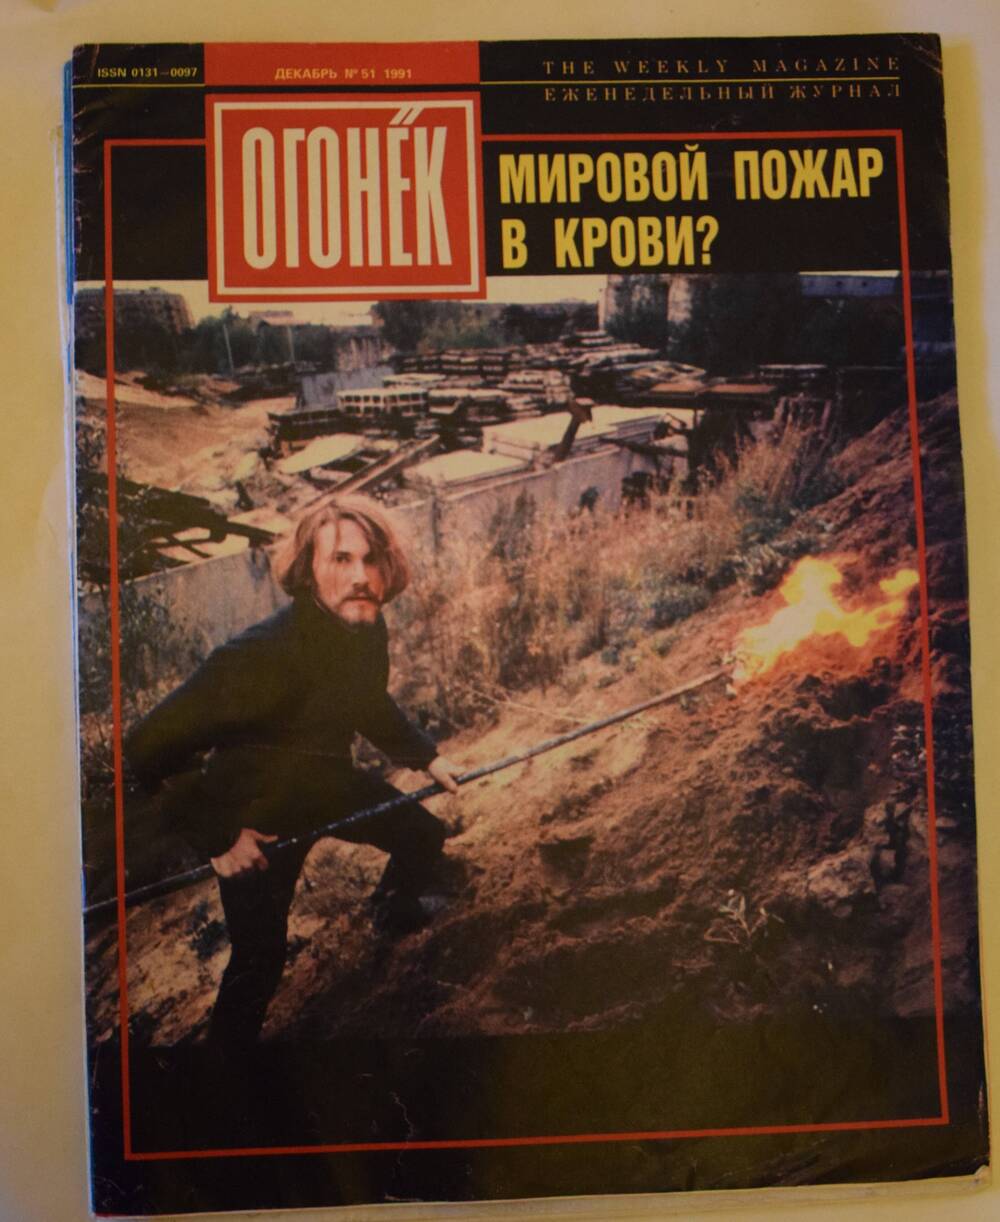 Журнал «Огонек» № 51 (3361) от 14 декабря 1991 г.